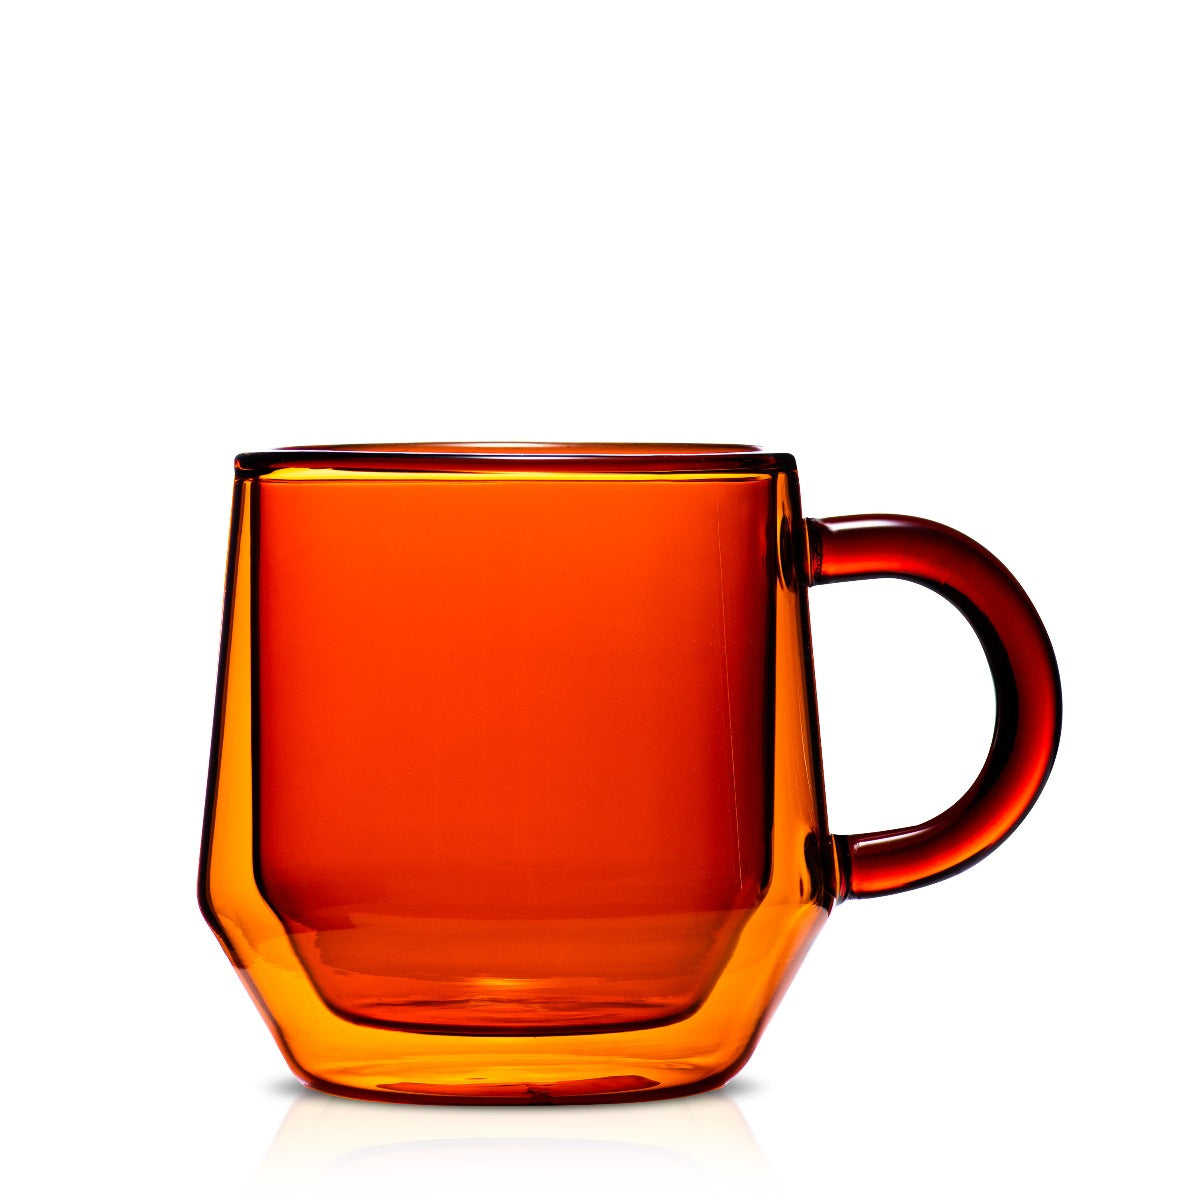 Yama Glass Drip Pot Home Coffee Kit - 4 Cup with Heat Sleeve